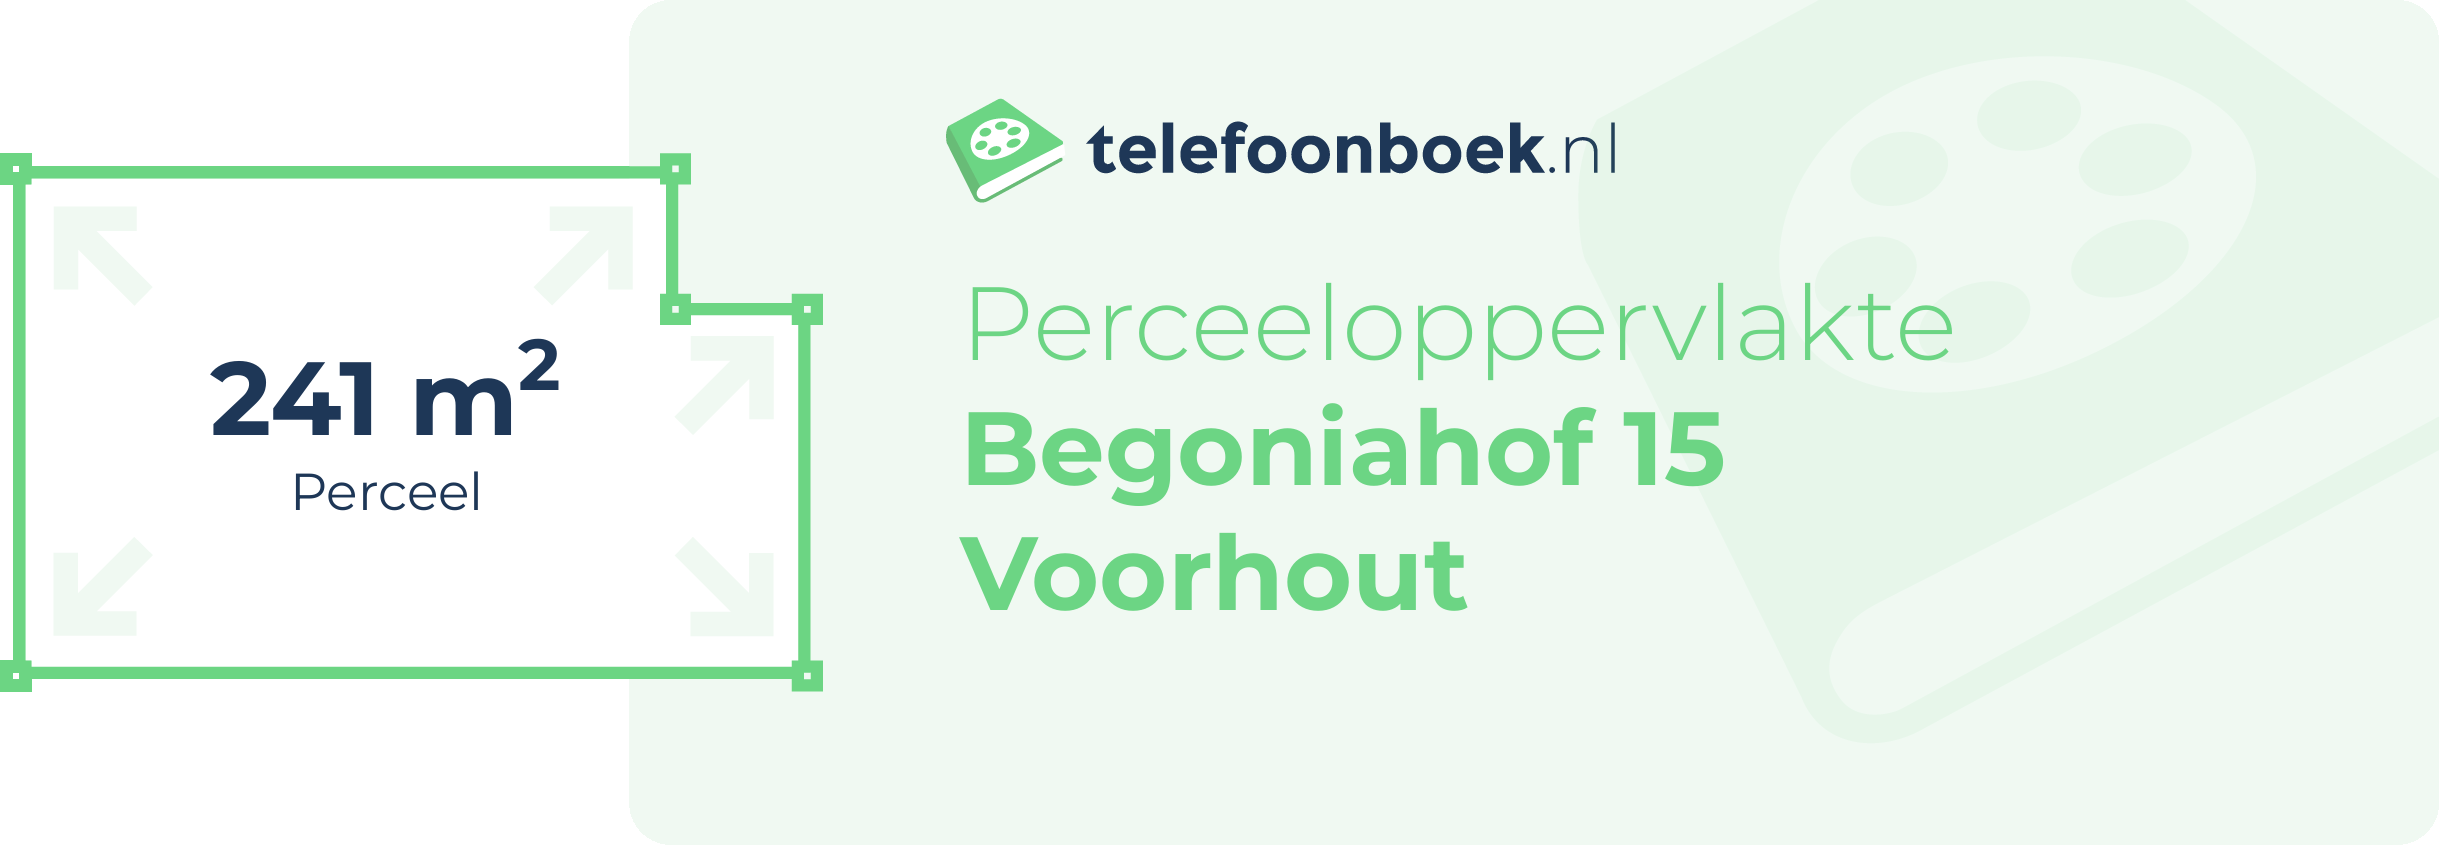 Perceeloppervlakte Begoniahof 15 Voorhout